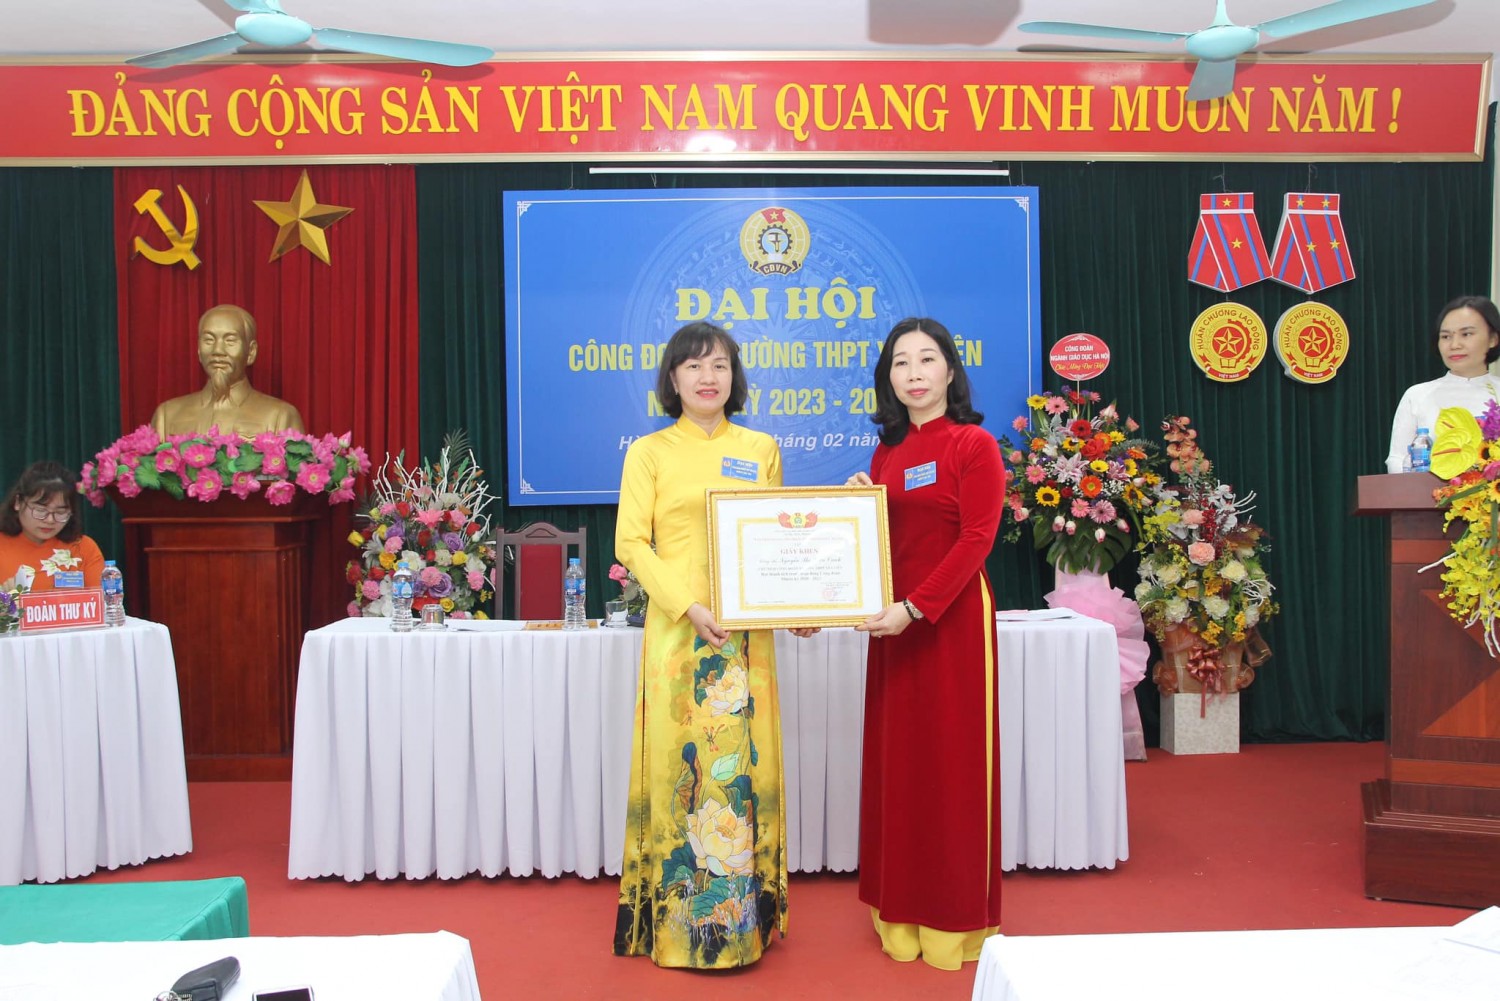 (Công đoàn trường THPT Yên Viên nhận giấy khen của Công đoàn ngành Giáo dục Hà Nội)